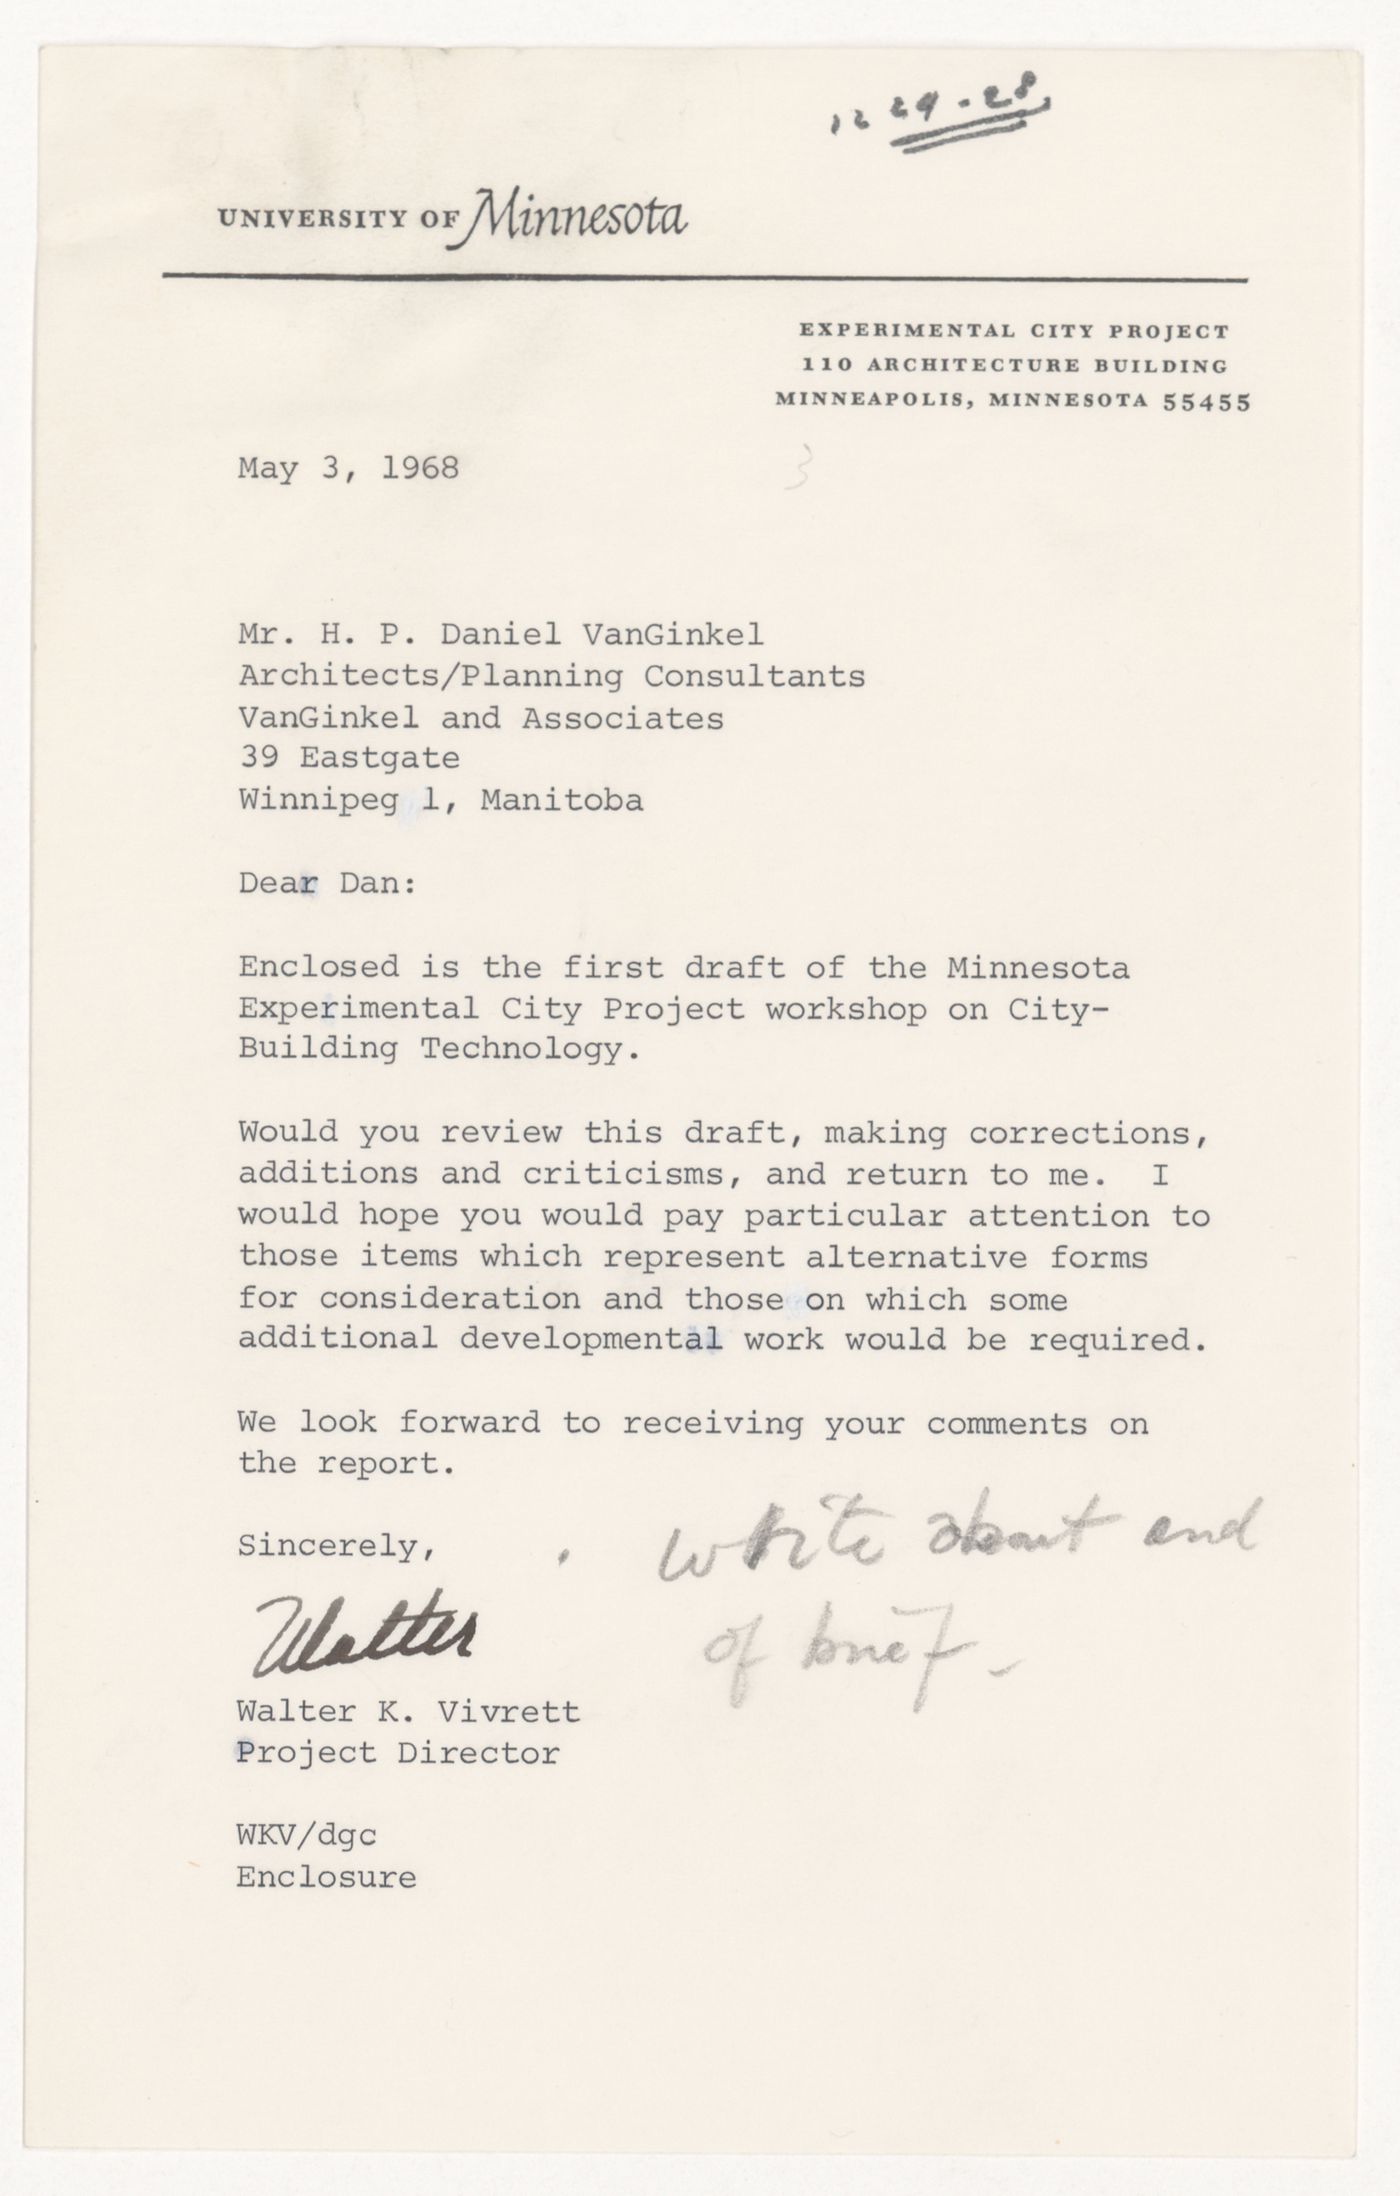 Letter from Walter K. Vivrett to H. P. Daniel van Ginkel for Experimental City Project